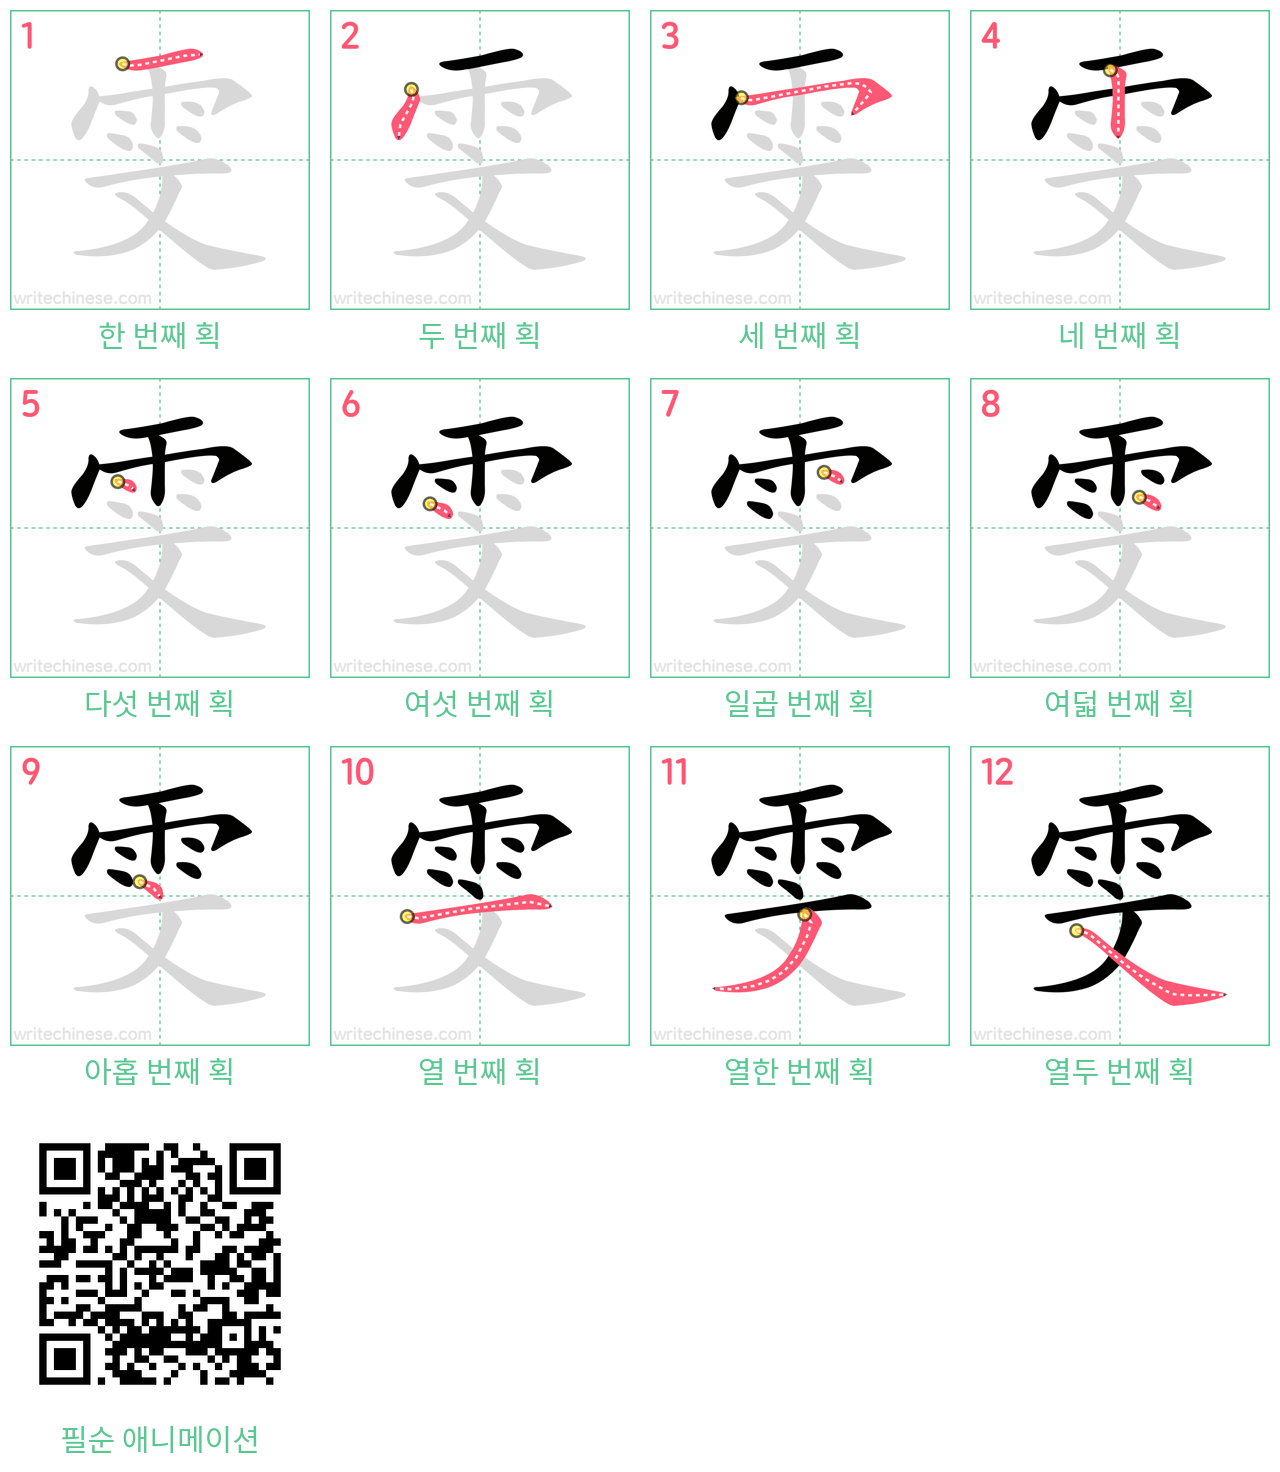 雯 step-by-step stroke order diagrams